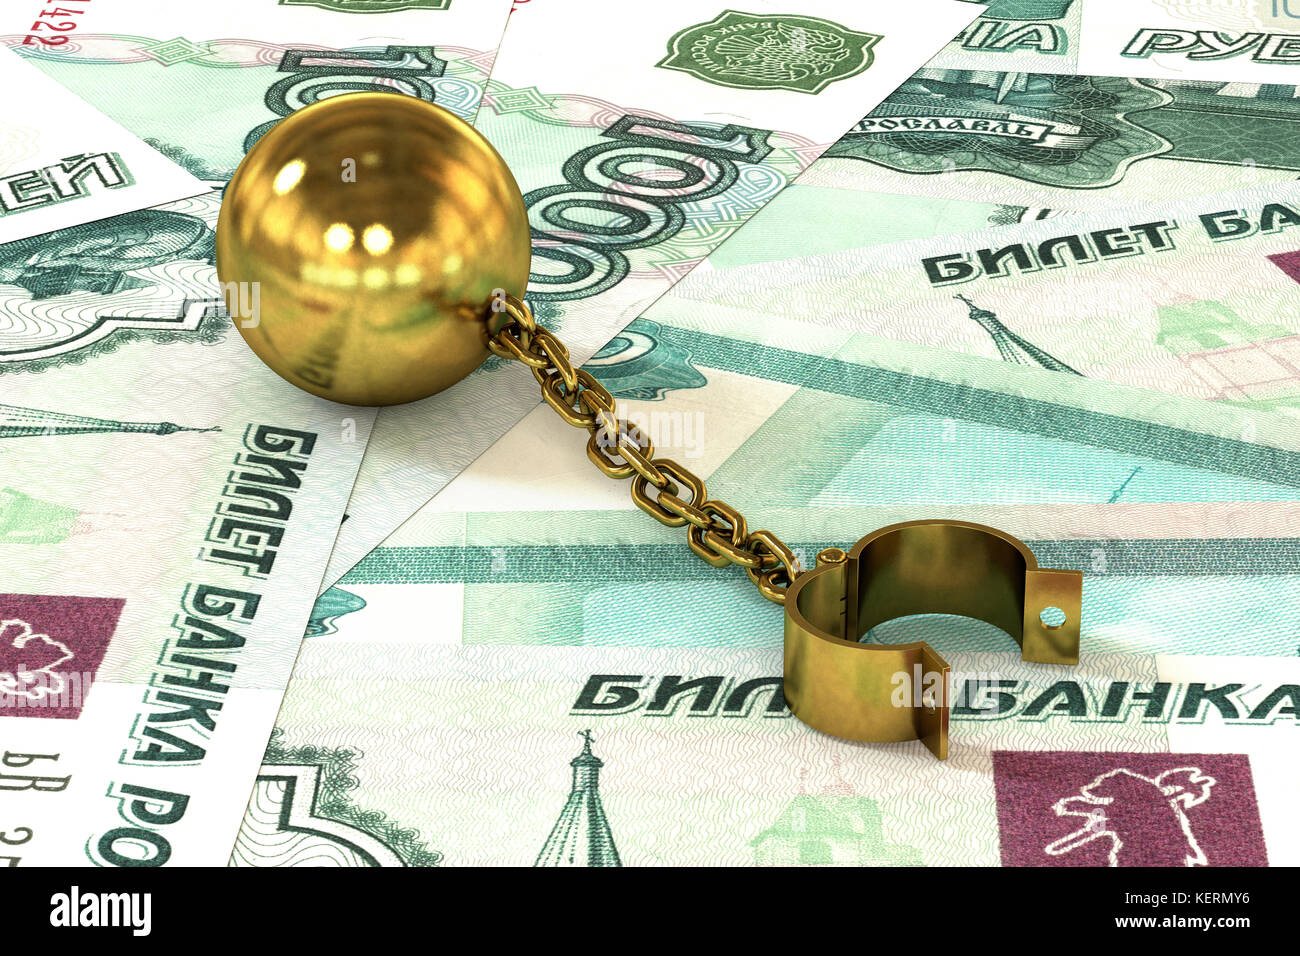 Glänzend goldenen Kugel und Kette verbunden Manschette liegen auf Rubel Banknoten Hintergrund zu öffnen. Das Konzept der Schuld mit einem hohen Zinssatz. Stockfoto